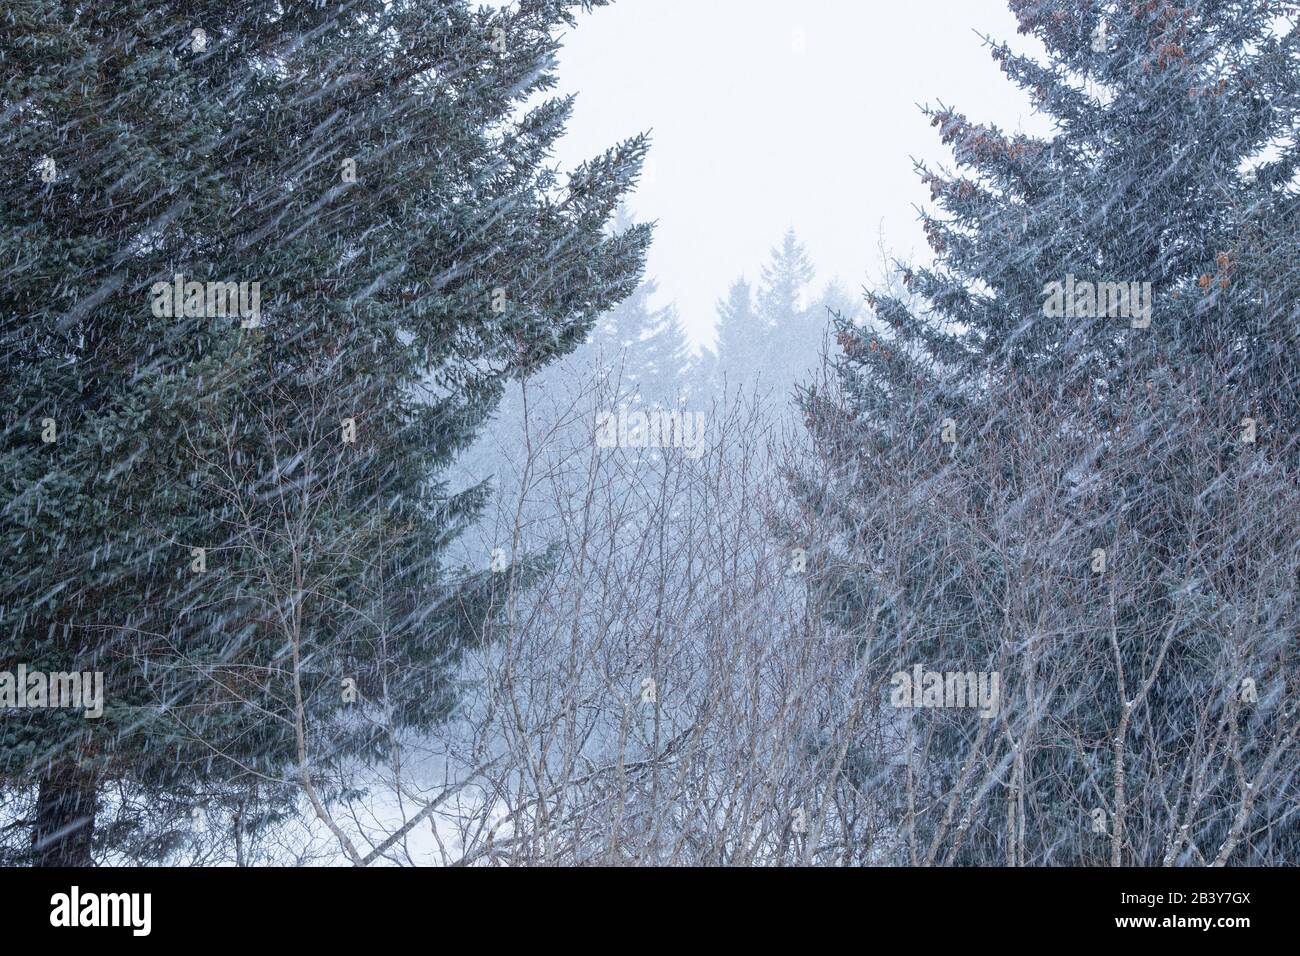 Heavy snowing in Kodiak, Alaska. Stock Photo